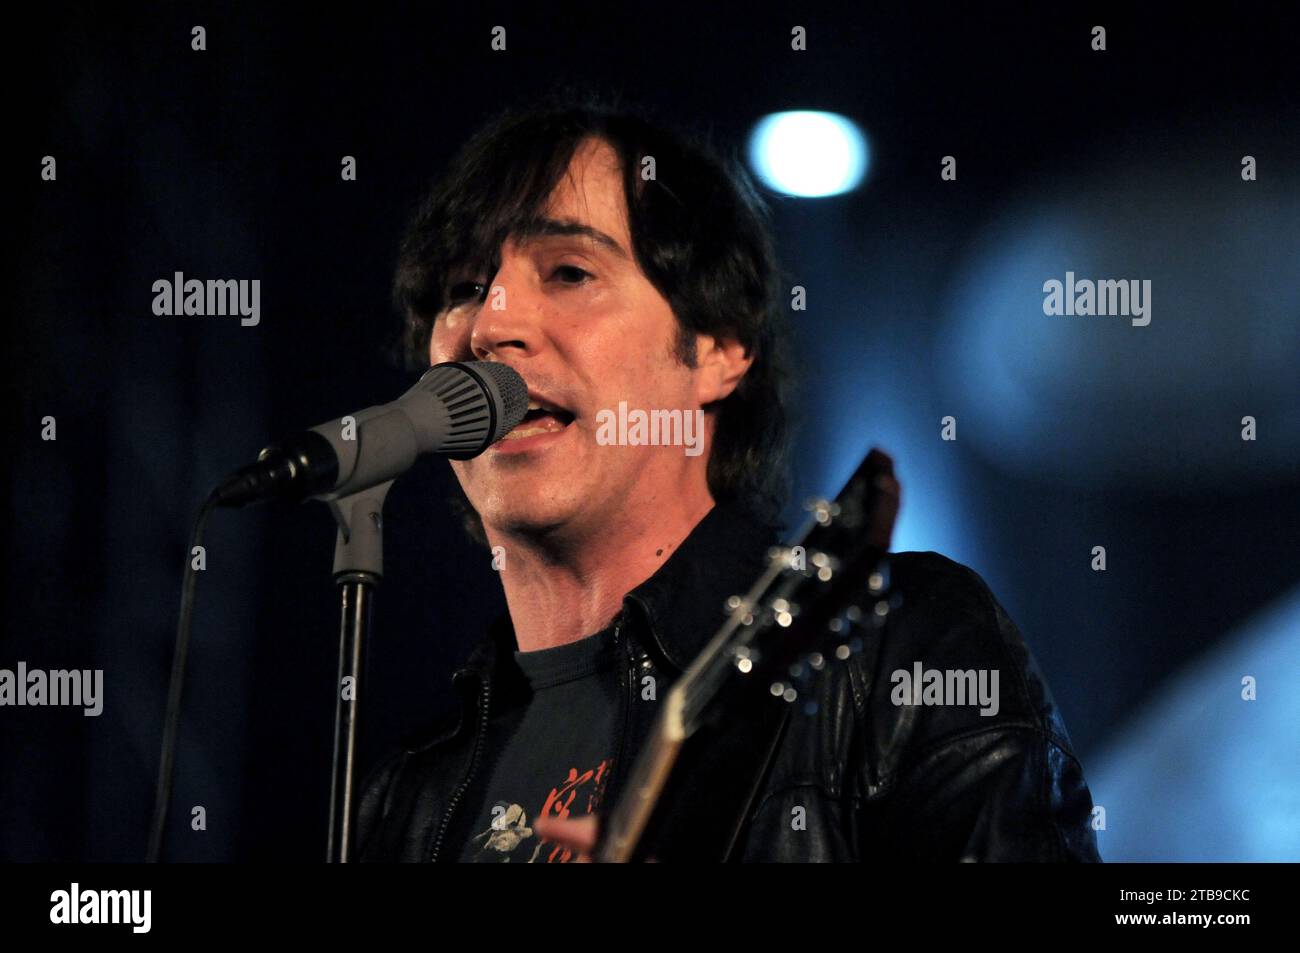 Milan Italie 2008-05-24 : Manuel Agnelli chanteur et guitariste du groupe Afterhours lors du concert au Palasharp Banque D'Images